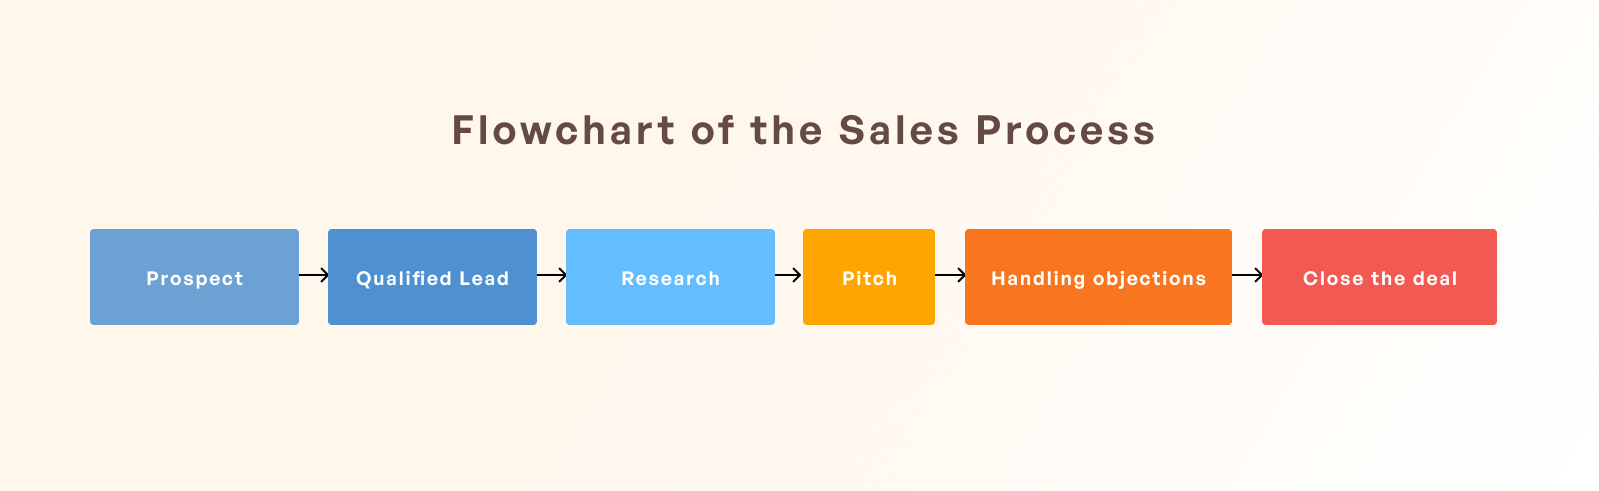 flowchart-sales-process.png